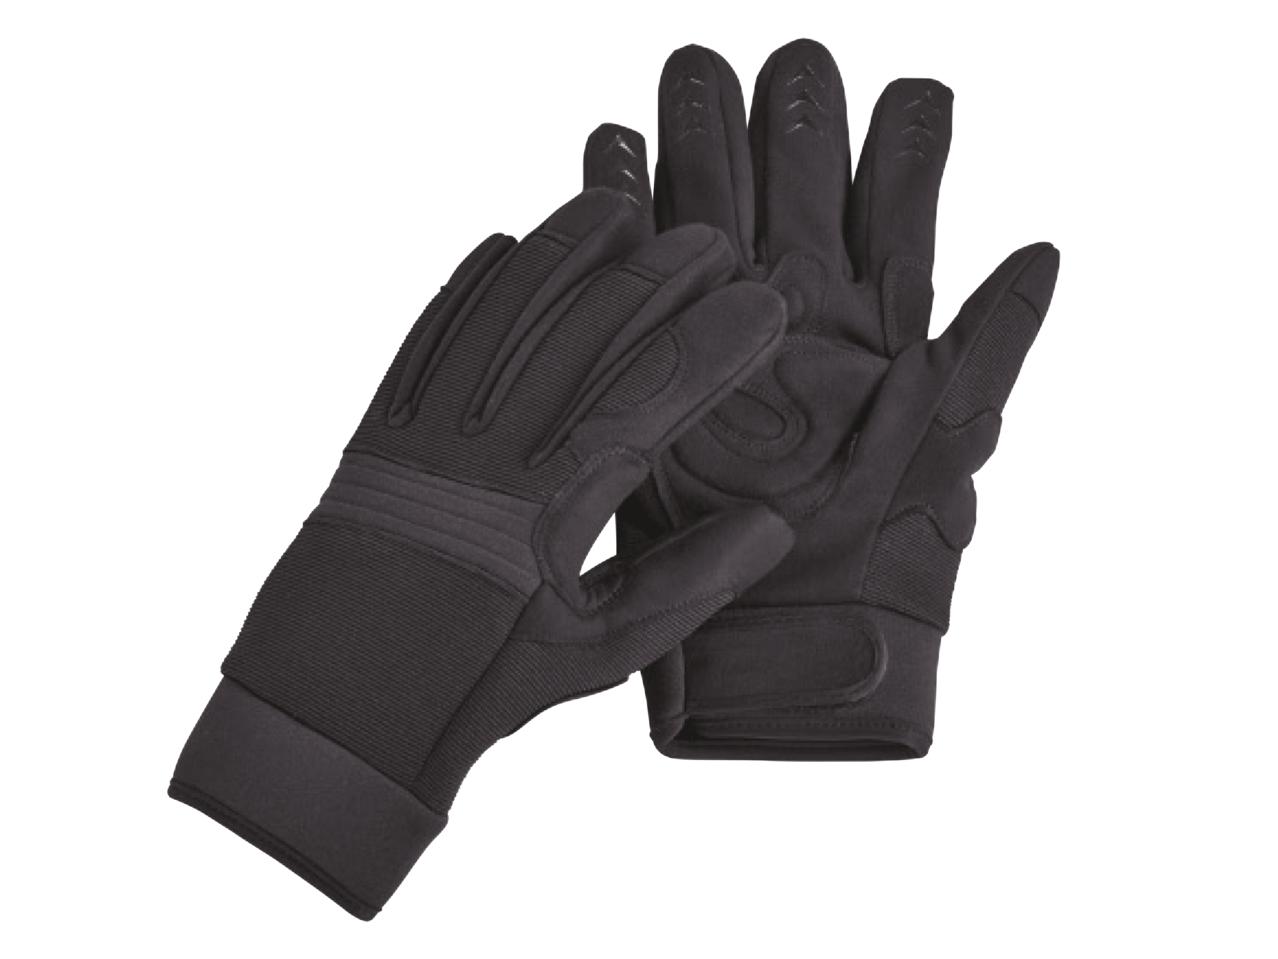 POWERFIX Work Gloves